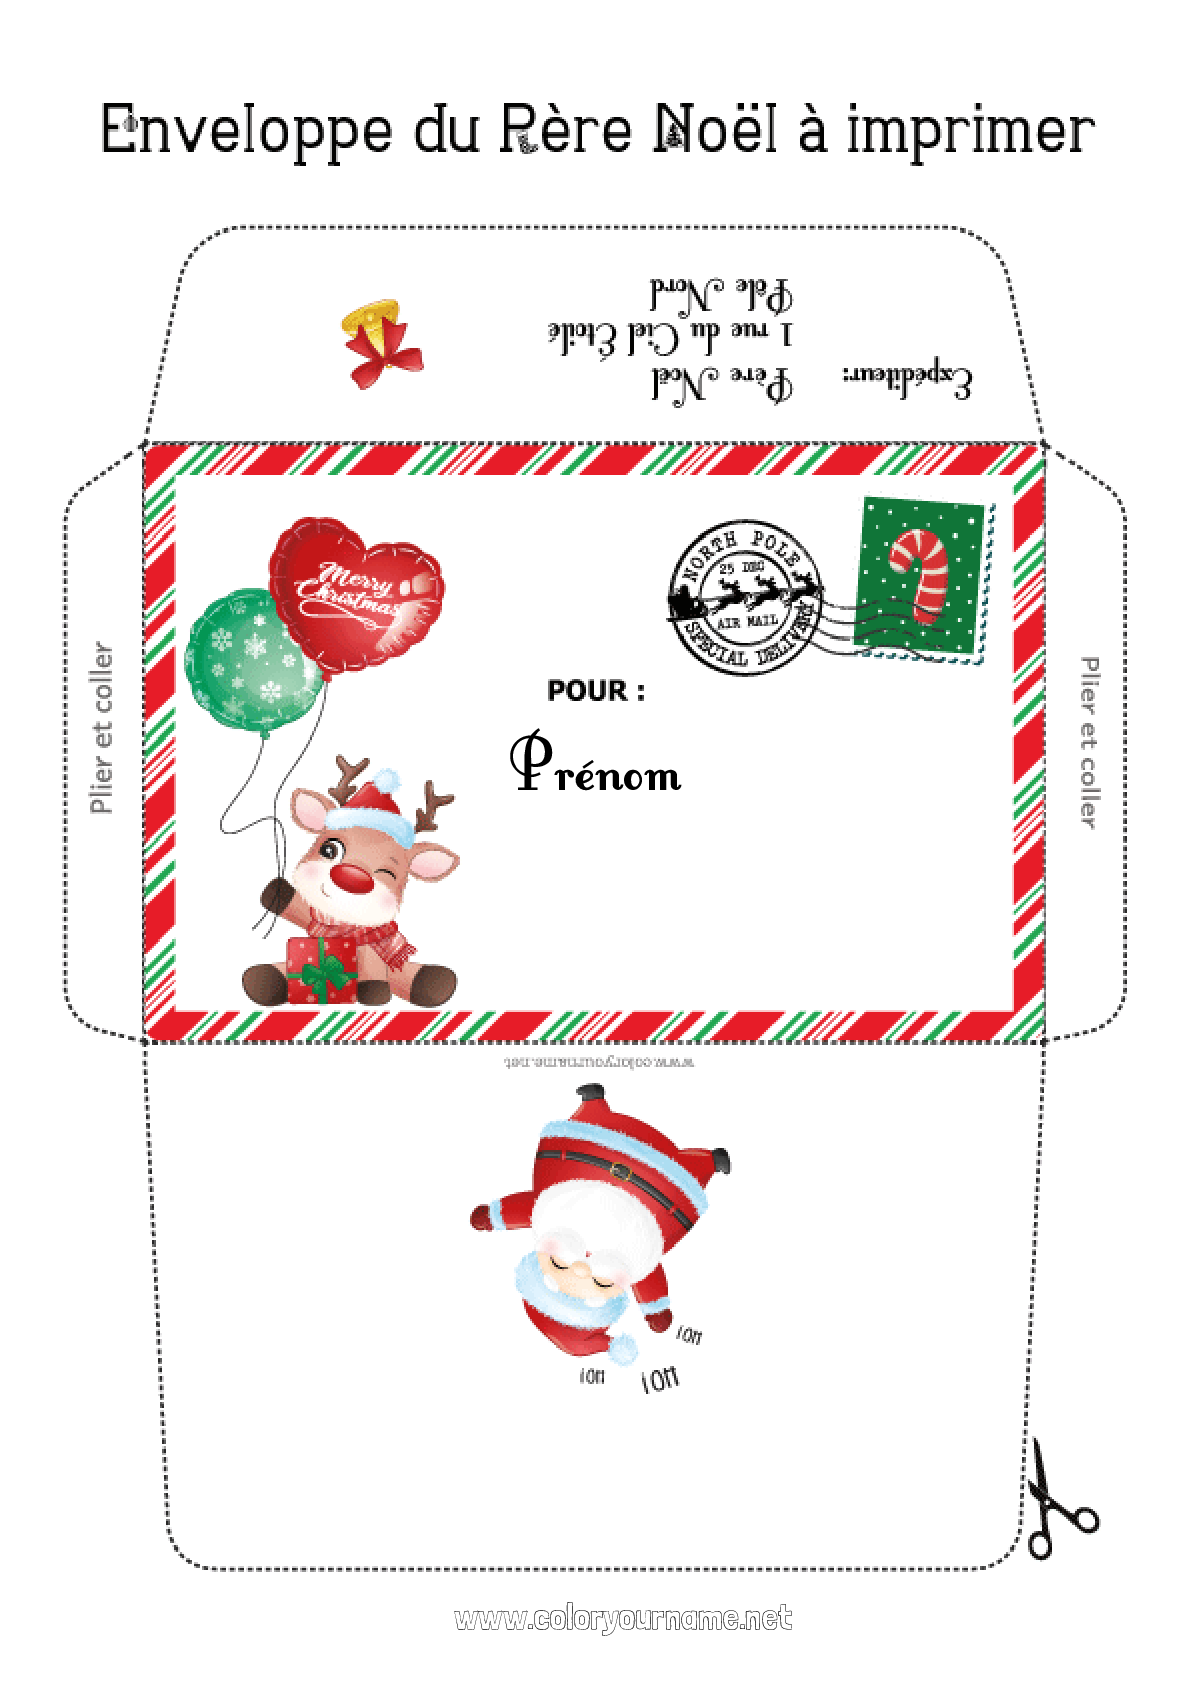 Enveloppe de Noël personnalisée et colorée à imprimer